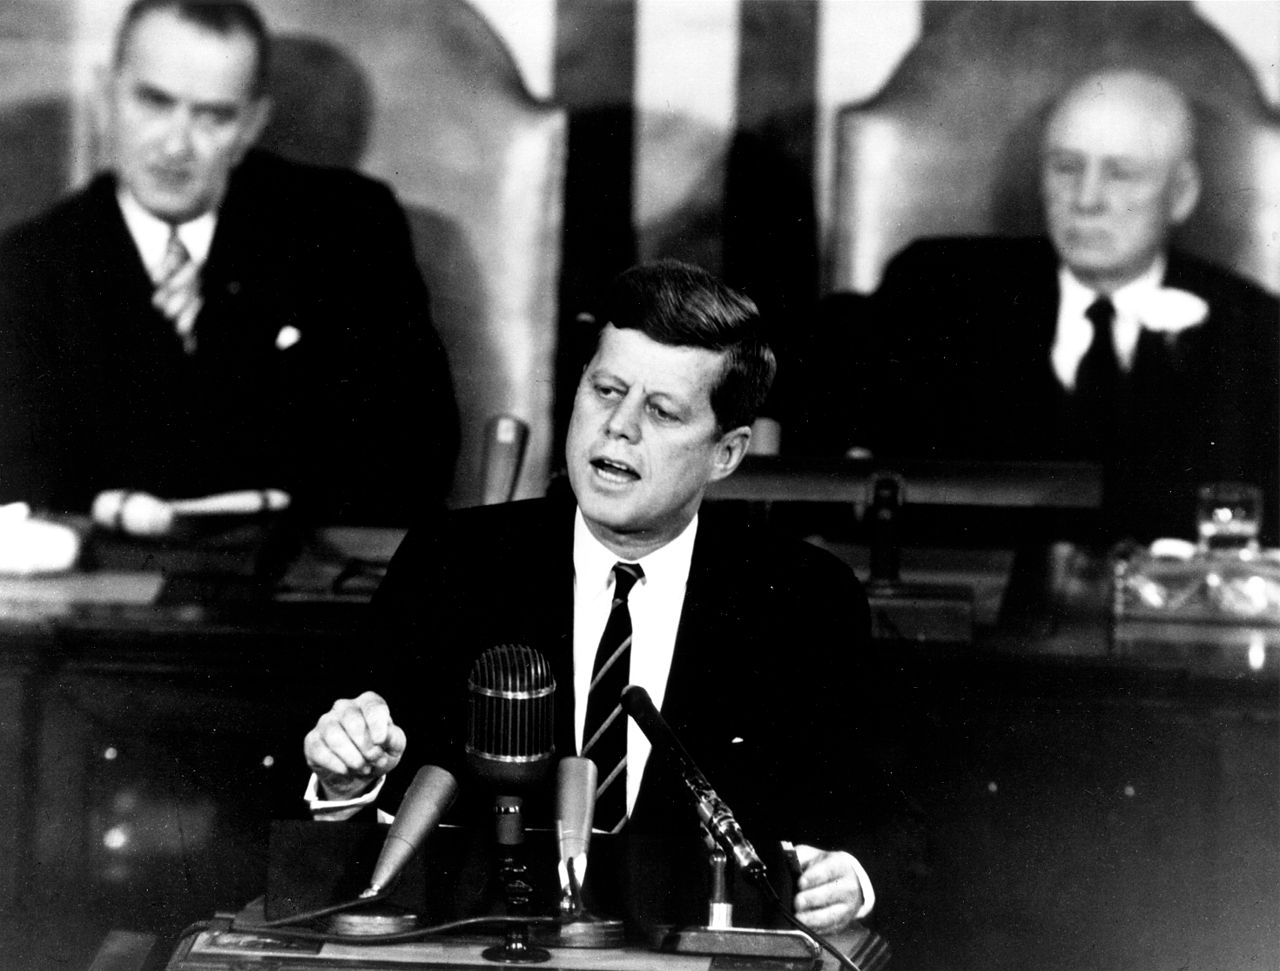 1961: President Kennedy Announces the Apollo Program